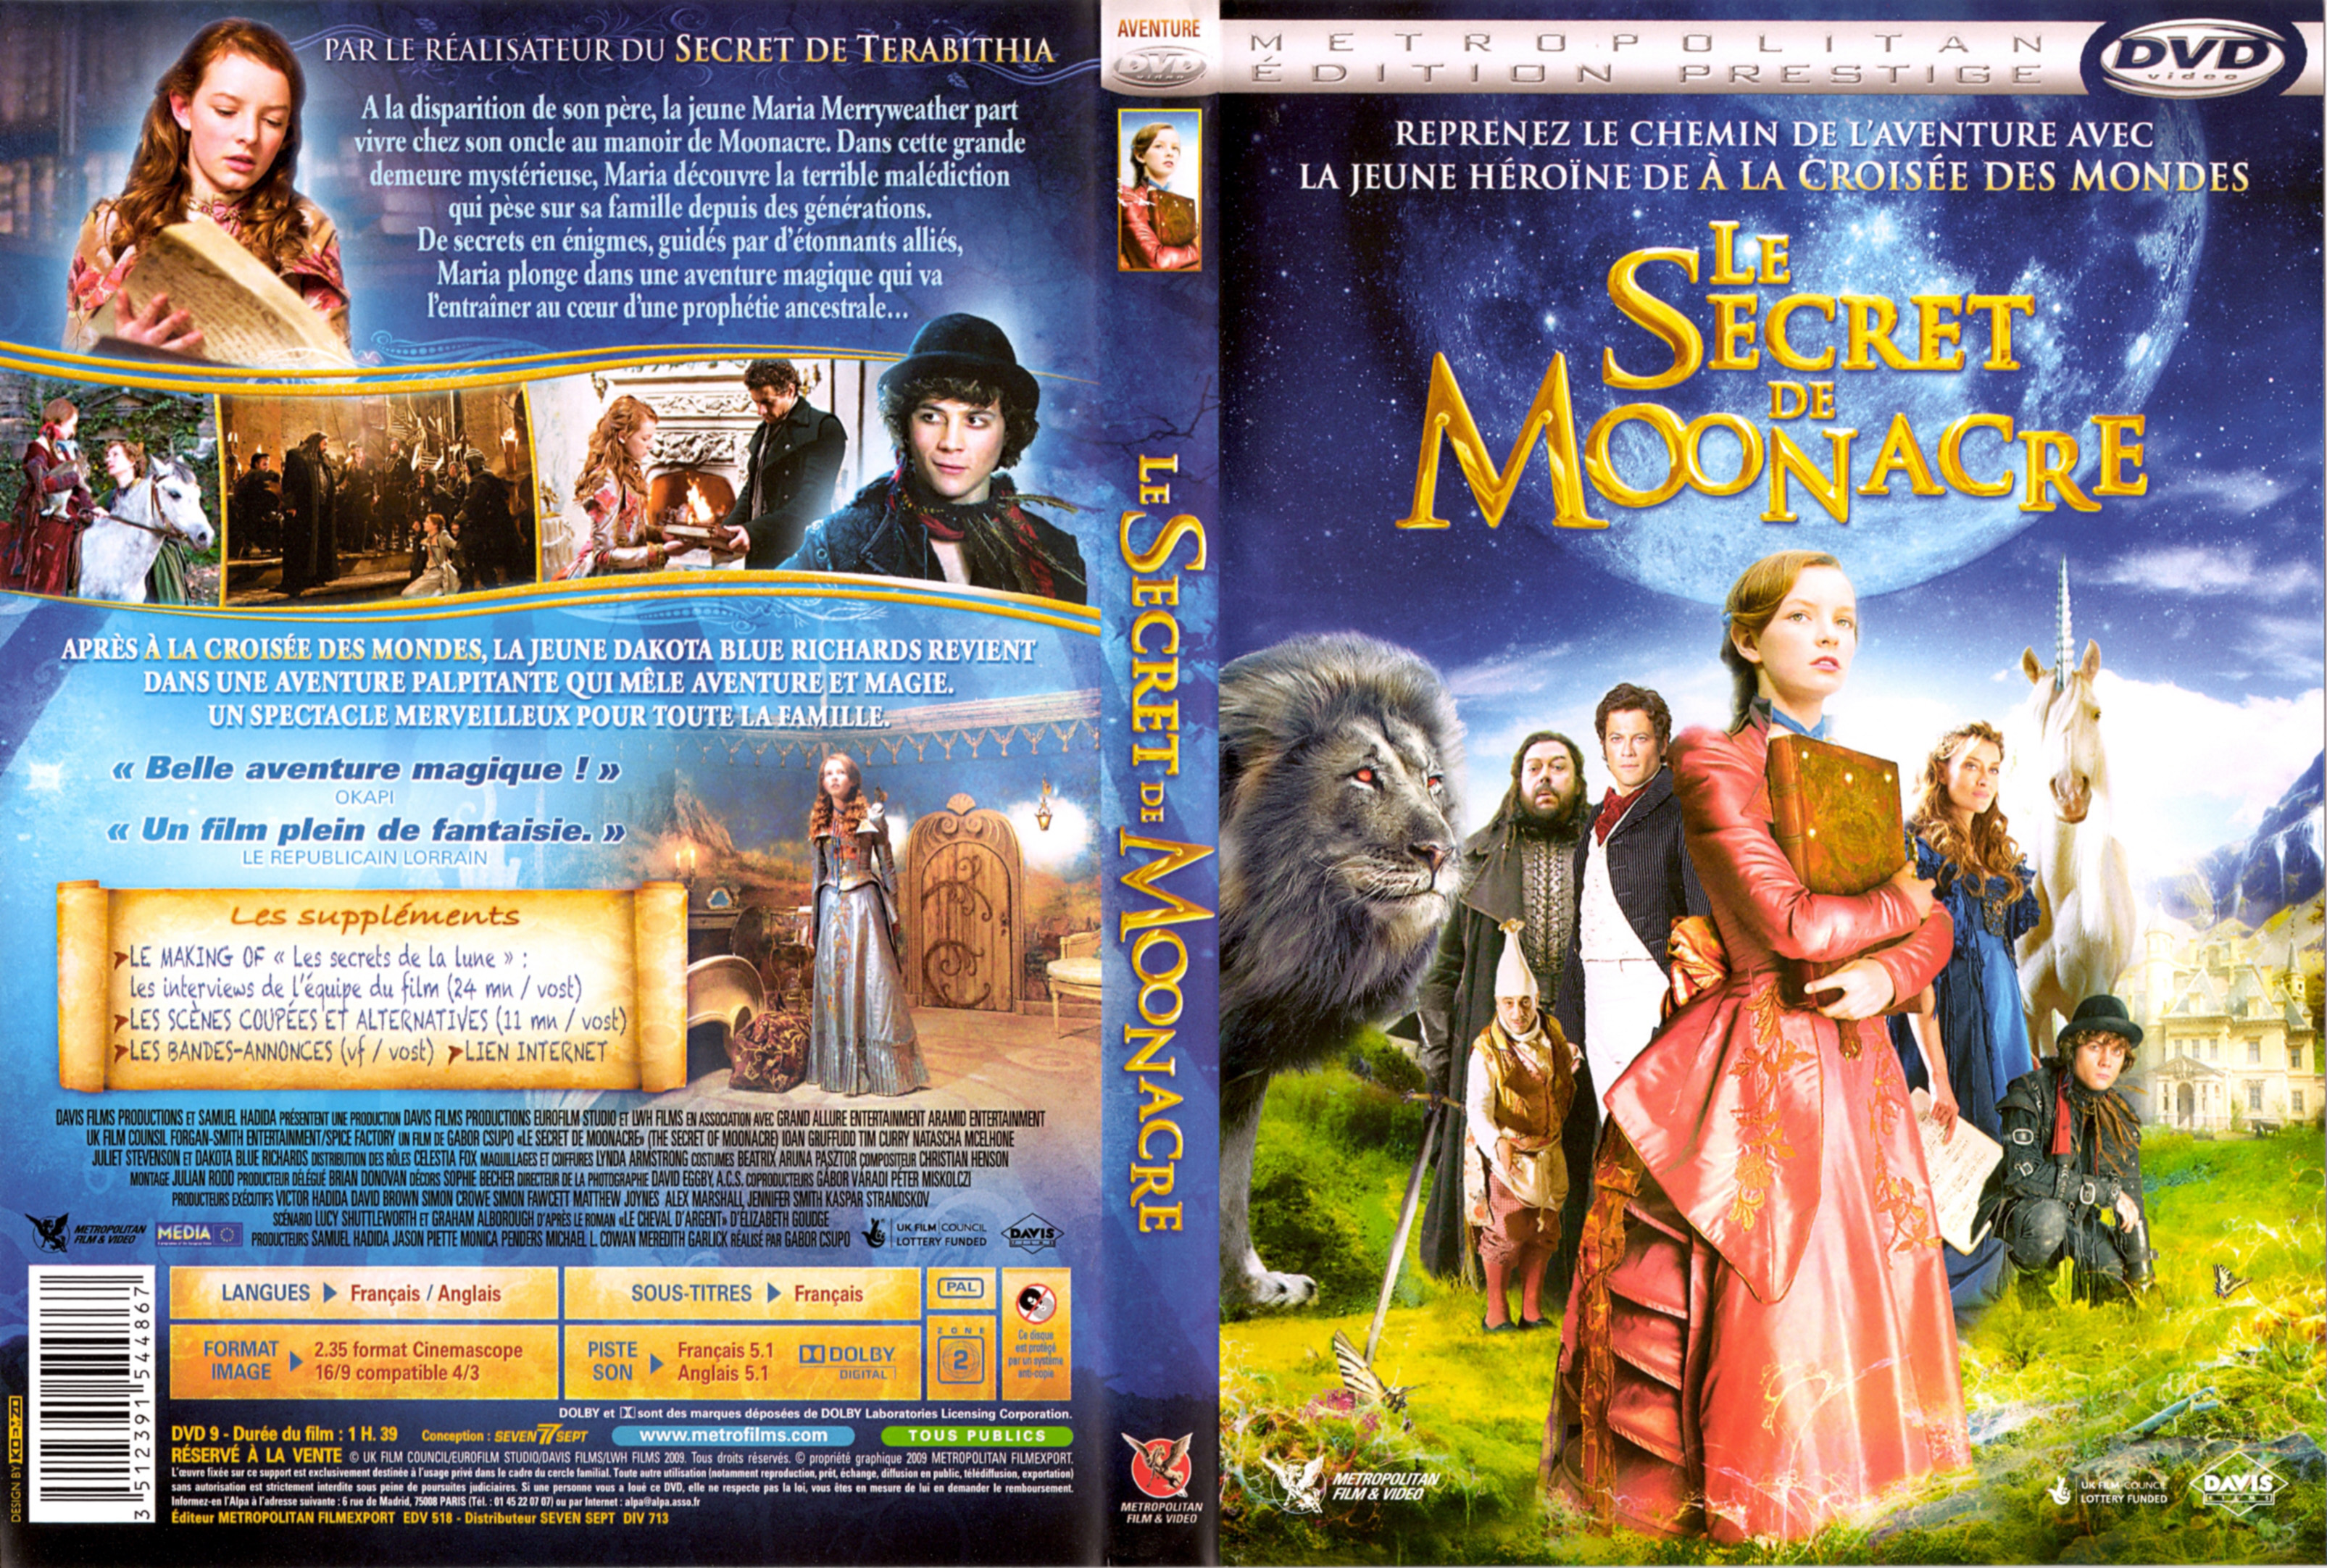 Jaquette DVD Le secret de Moonacre